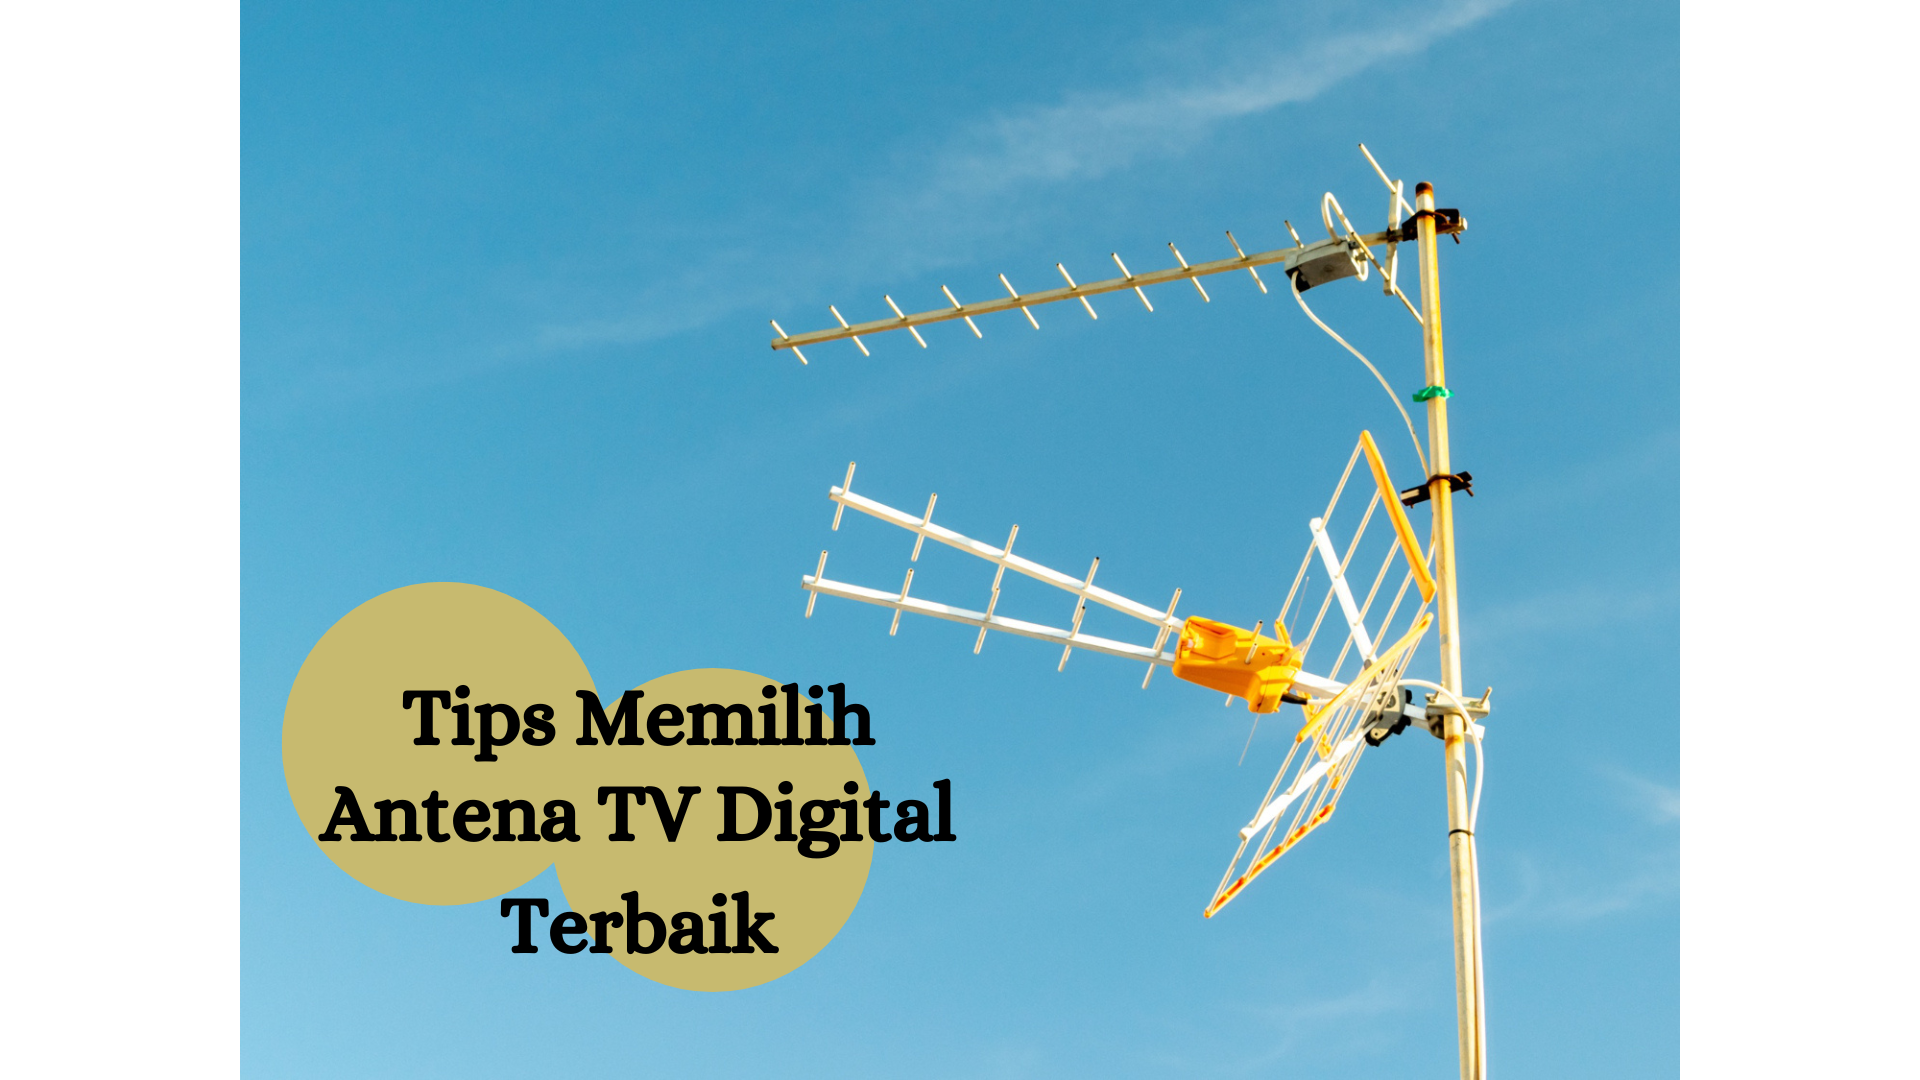 Tips Memilih Antena TV Digital Terbaik